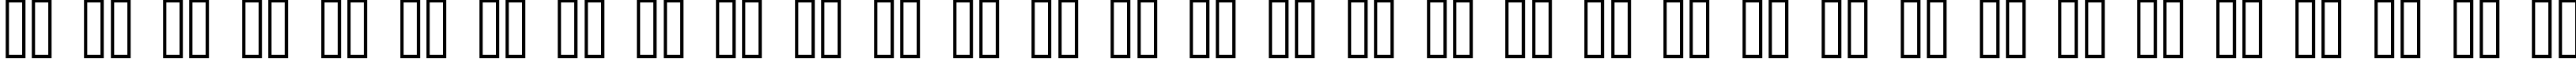 Пример написания русского алфавита шрифтом standard 07_54